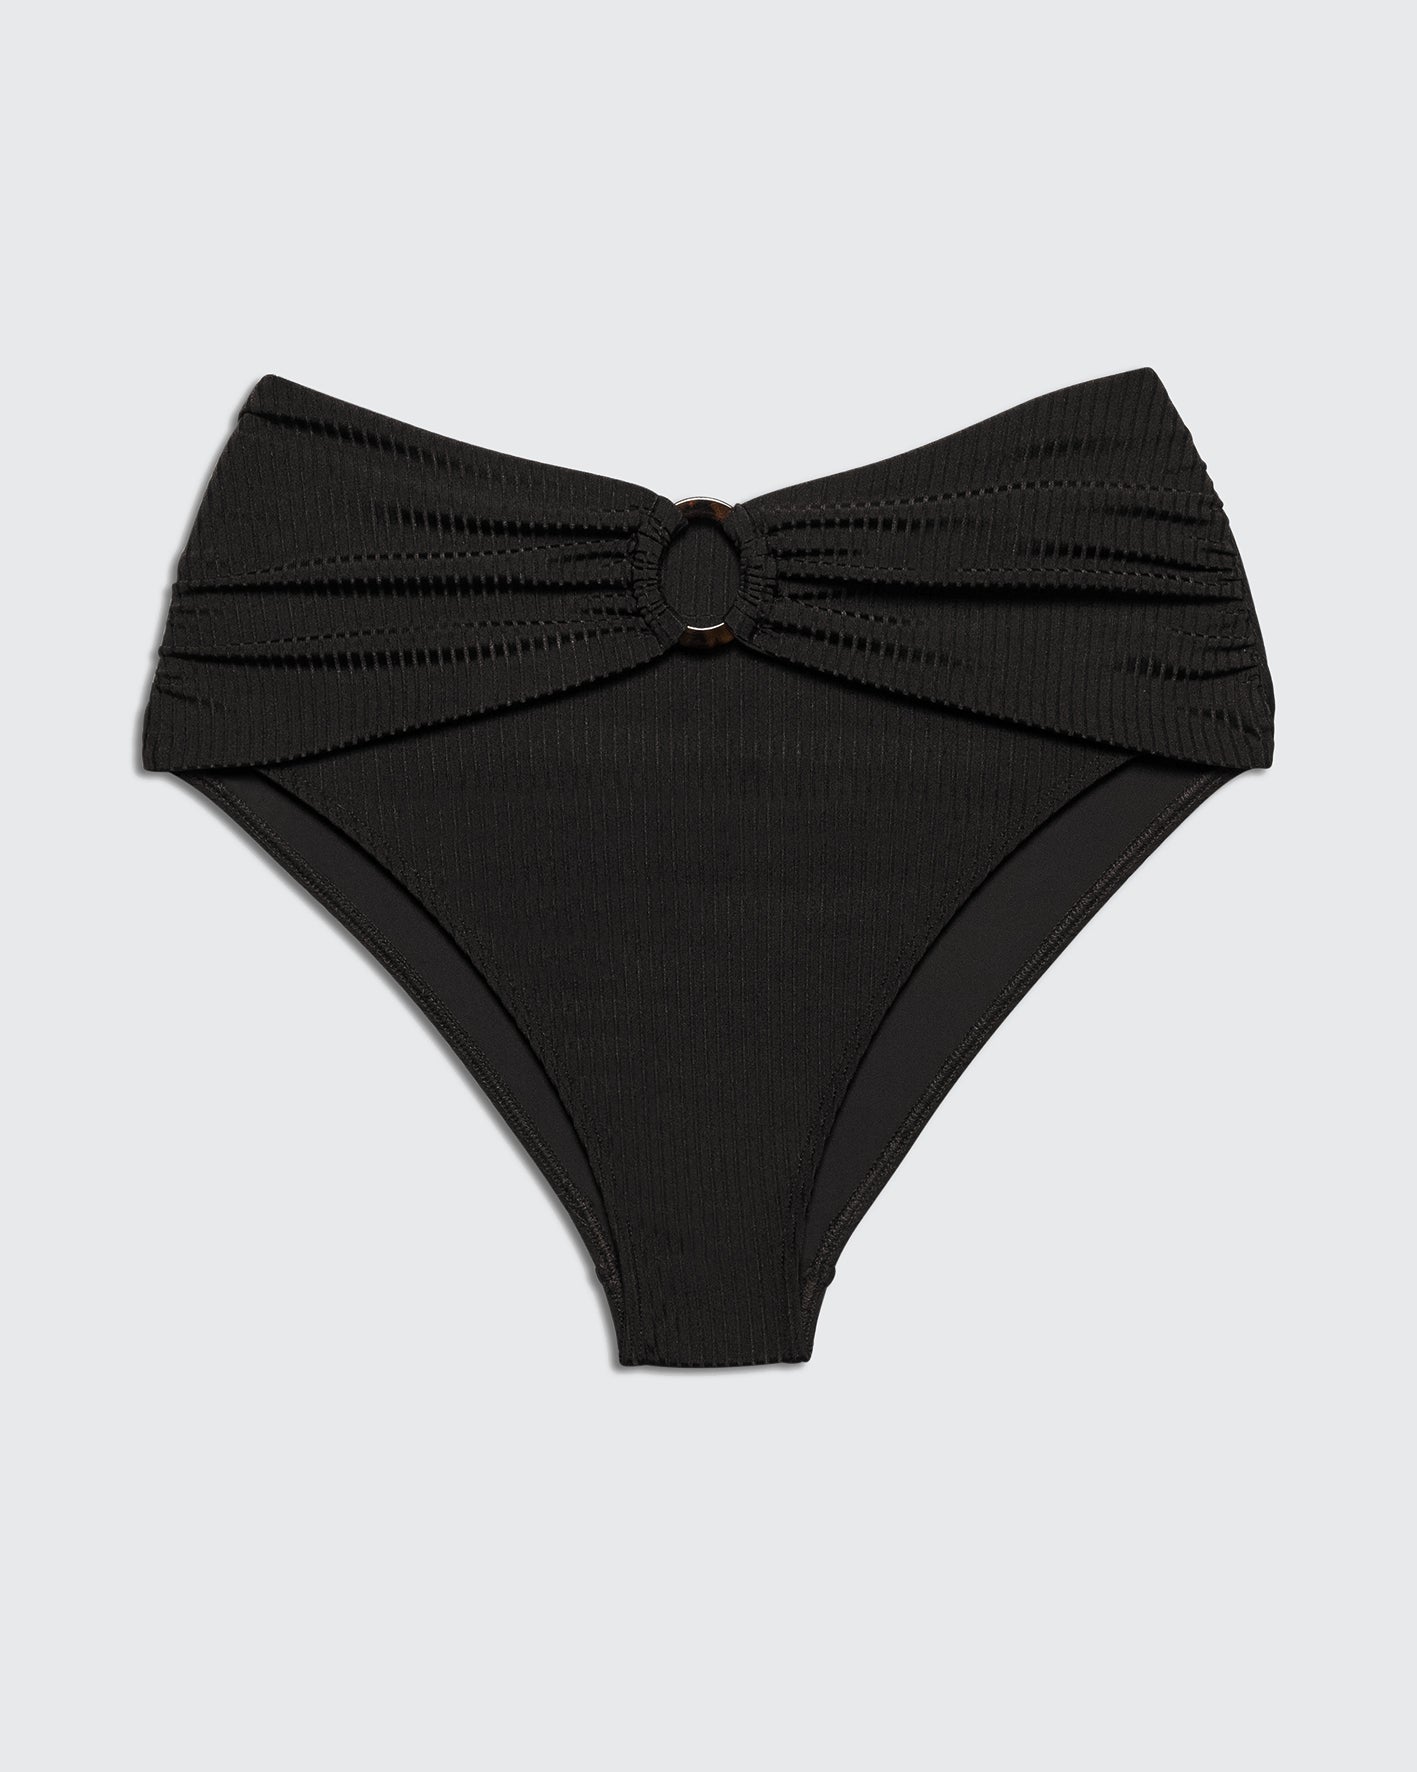 PUMA BOTTOM BLACK RIB - BIKINI -BiliBlond Swimwear